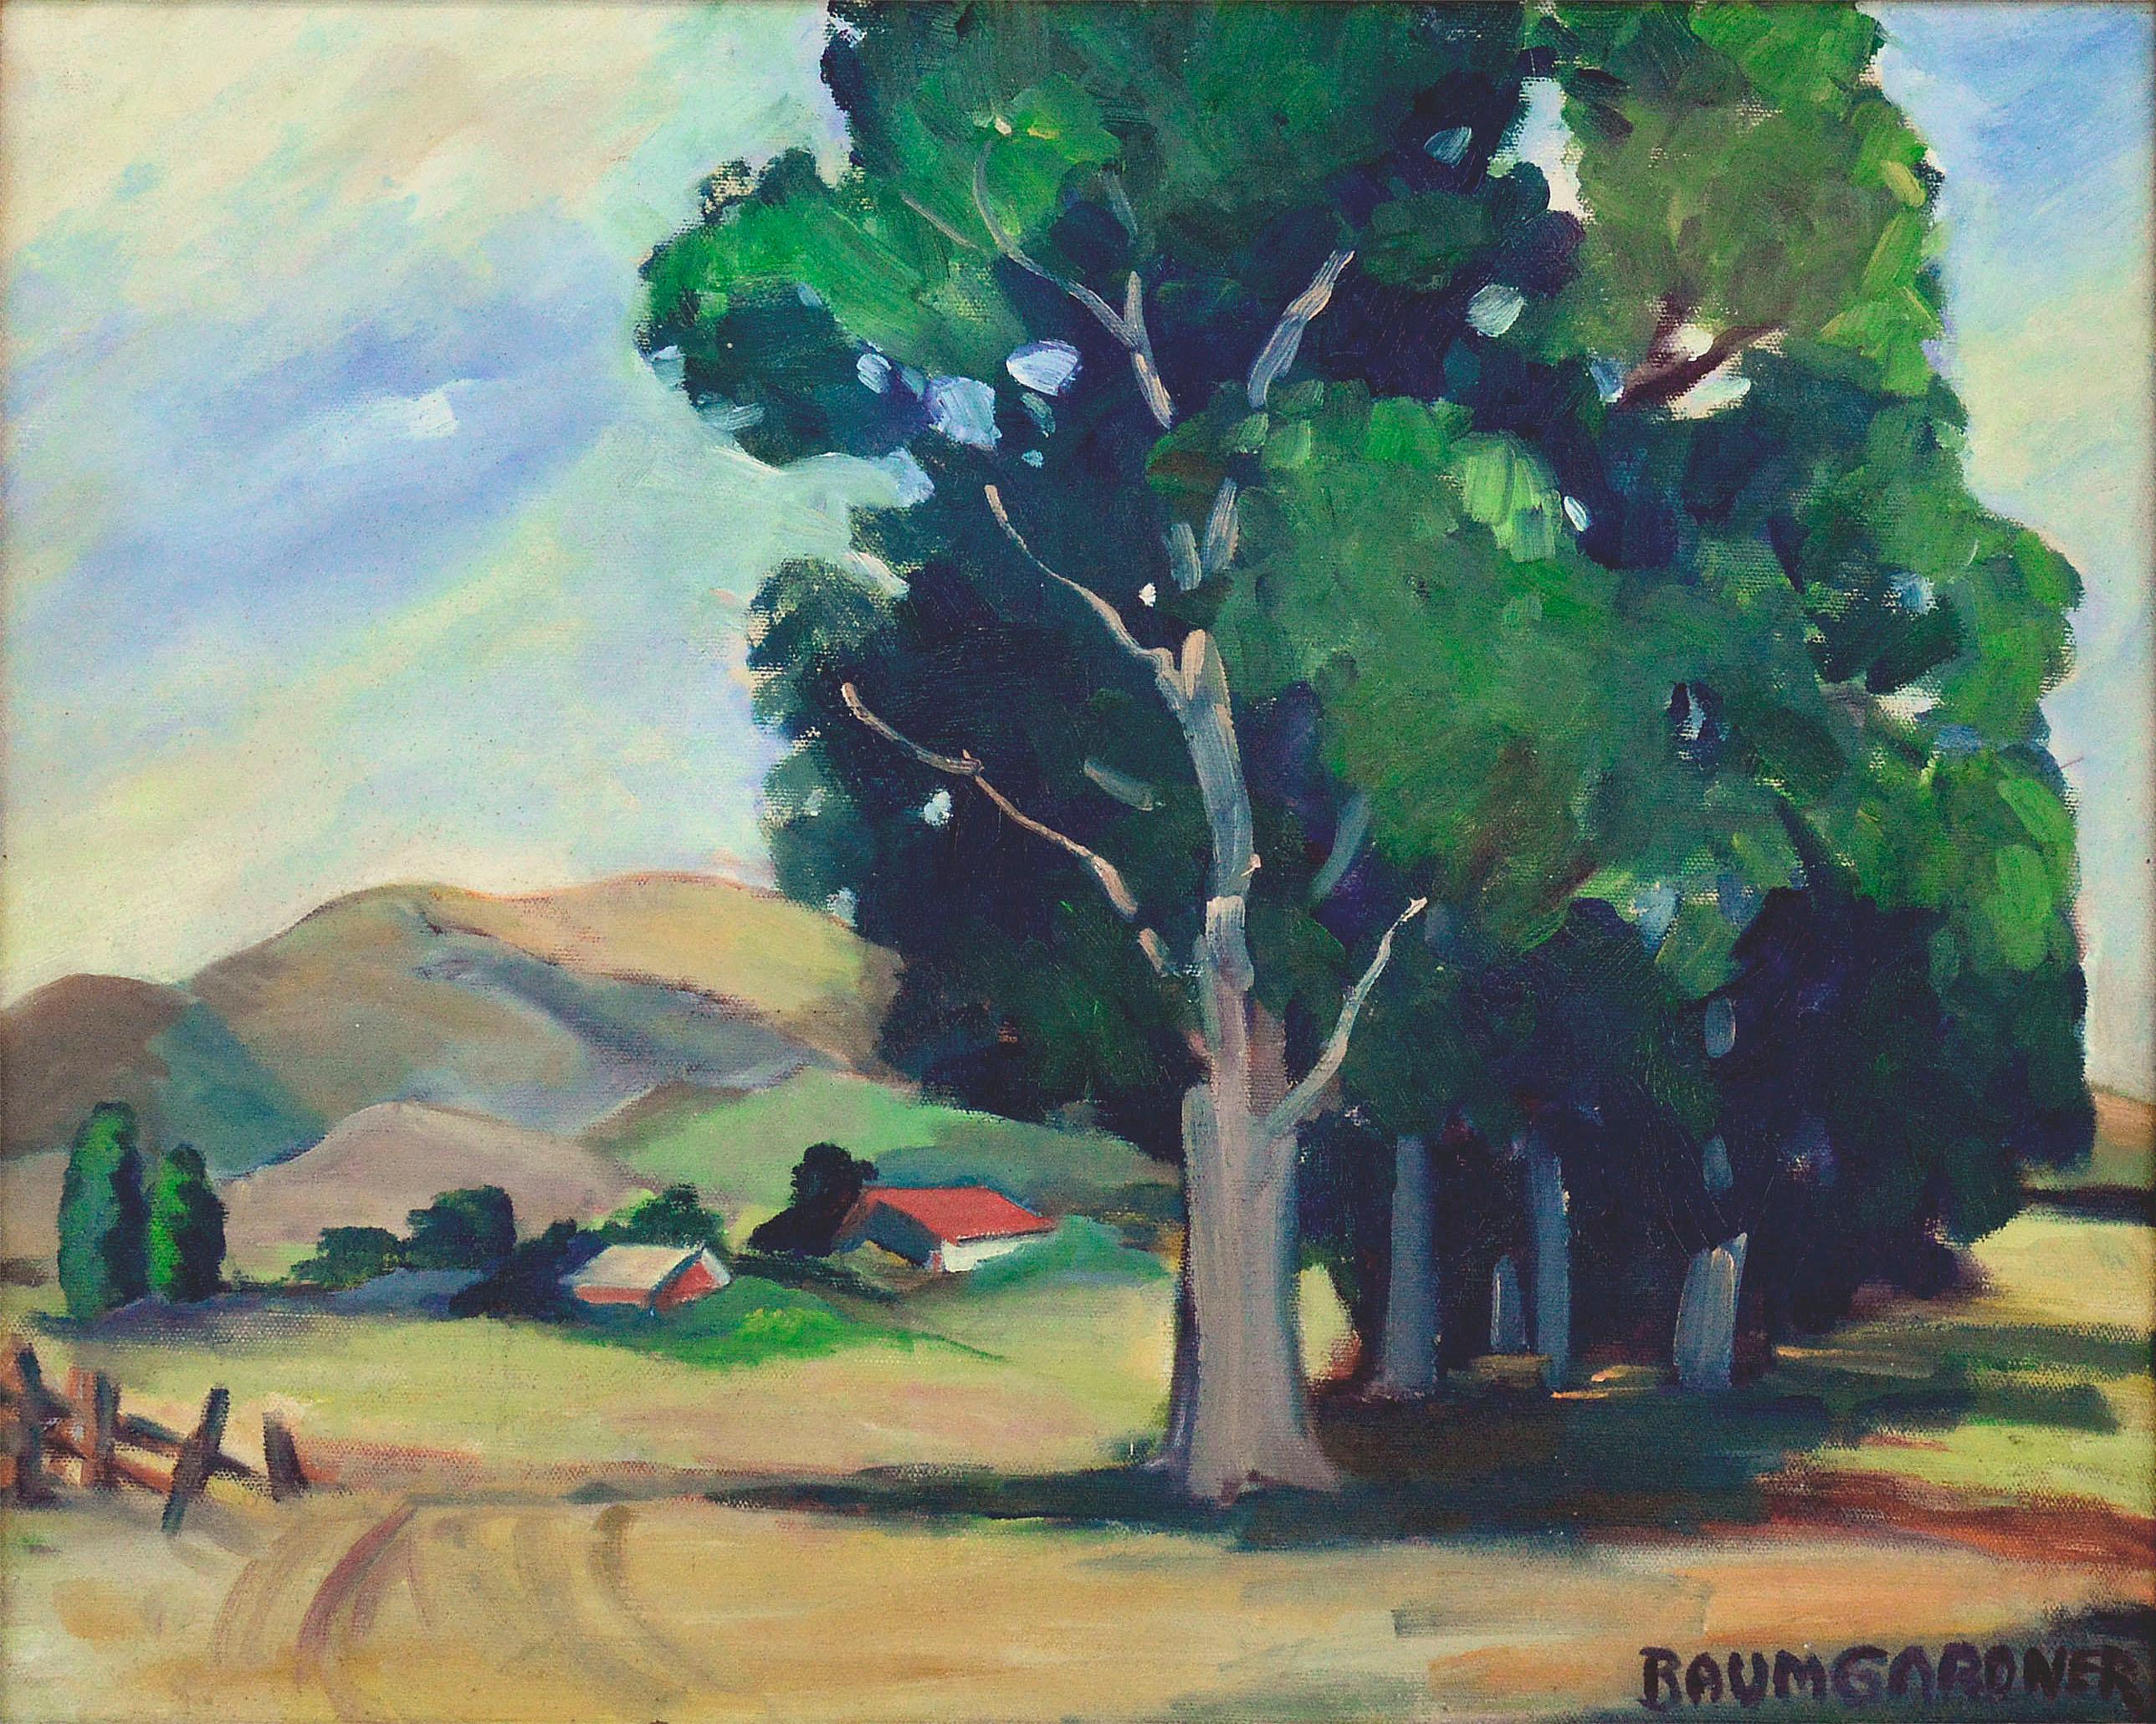 Bauernhof im Tal – Kalifornien-Landschaft in freier Natur – Painting von Baumgardner